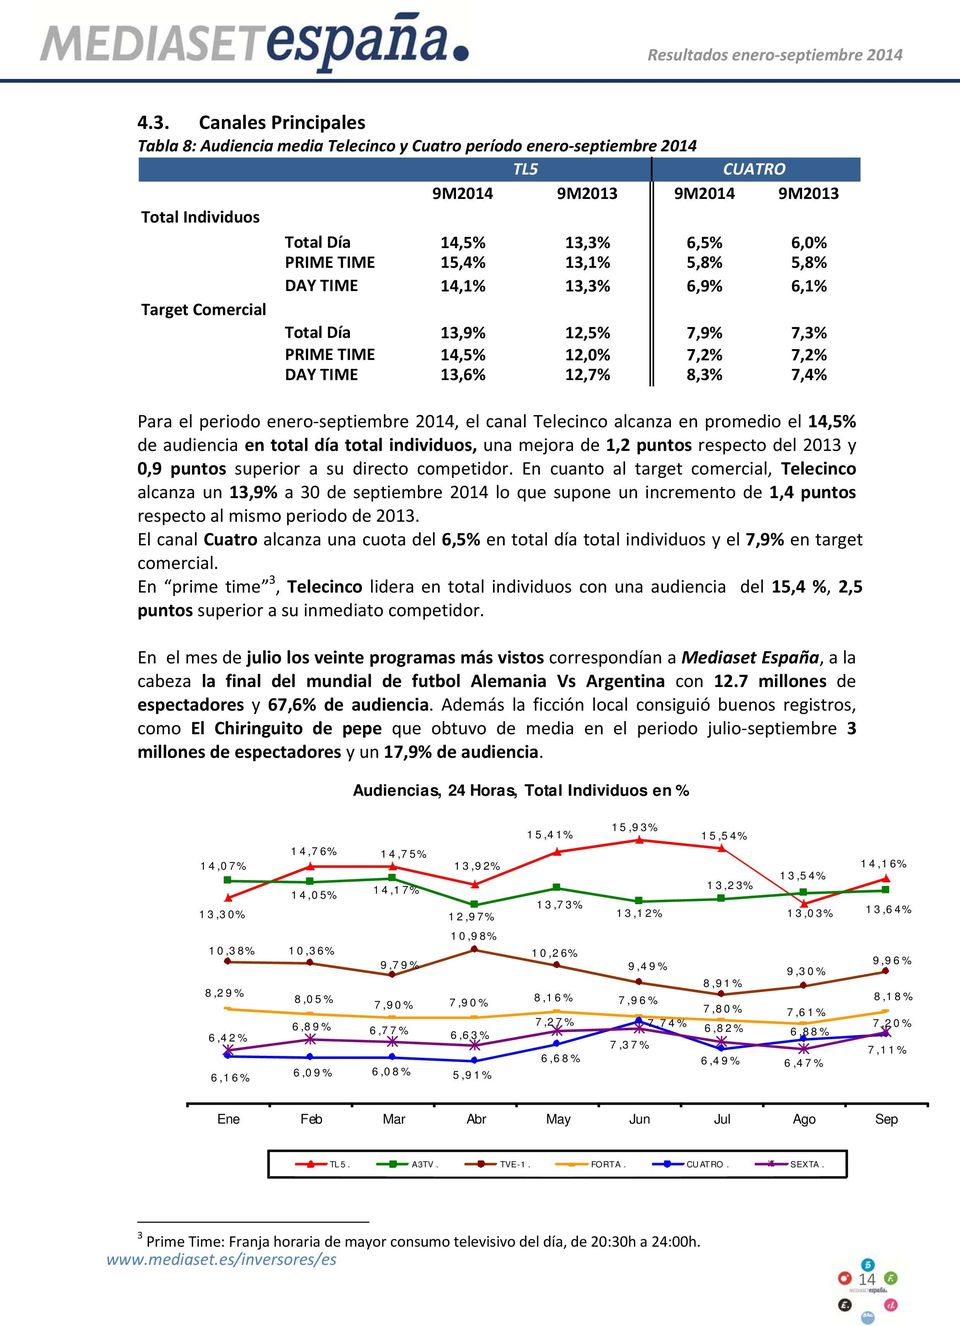 el periodo enero septiembre 2014, el canal Telecinco alcanza en promedio el 14,5% de audiencia en total día total individuos, una mejora de 1,2 puntos respecto del 2013 y 0,9 puntos superior a su